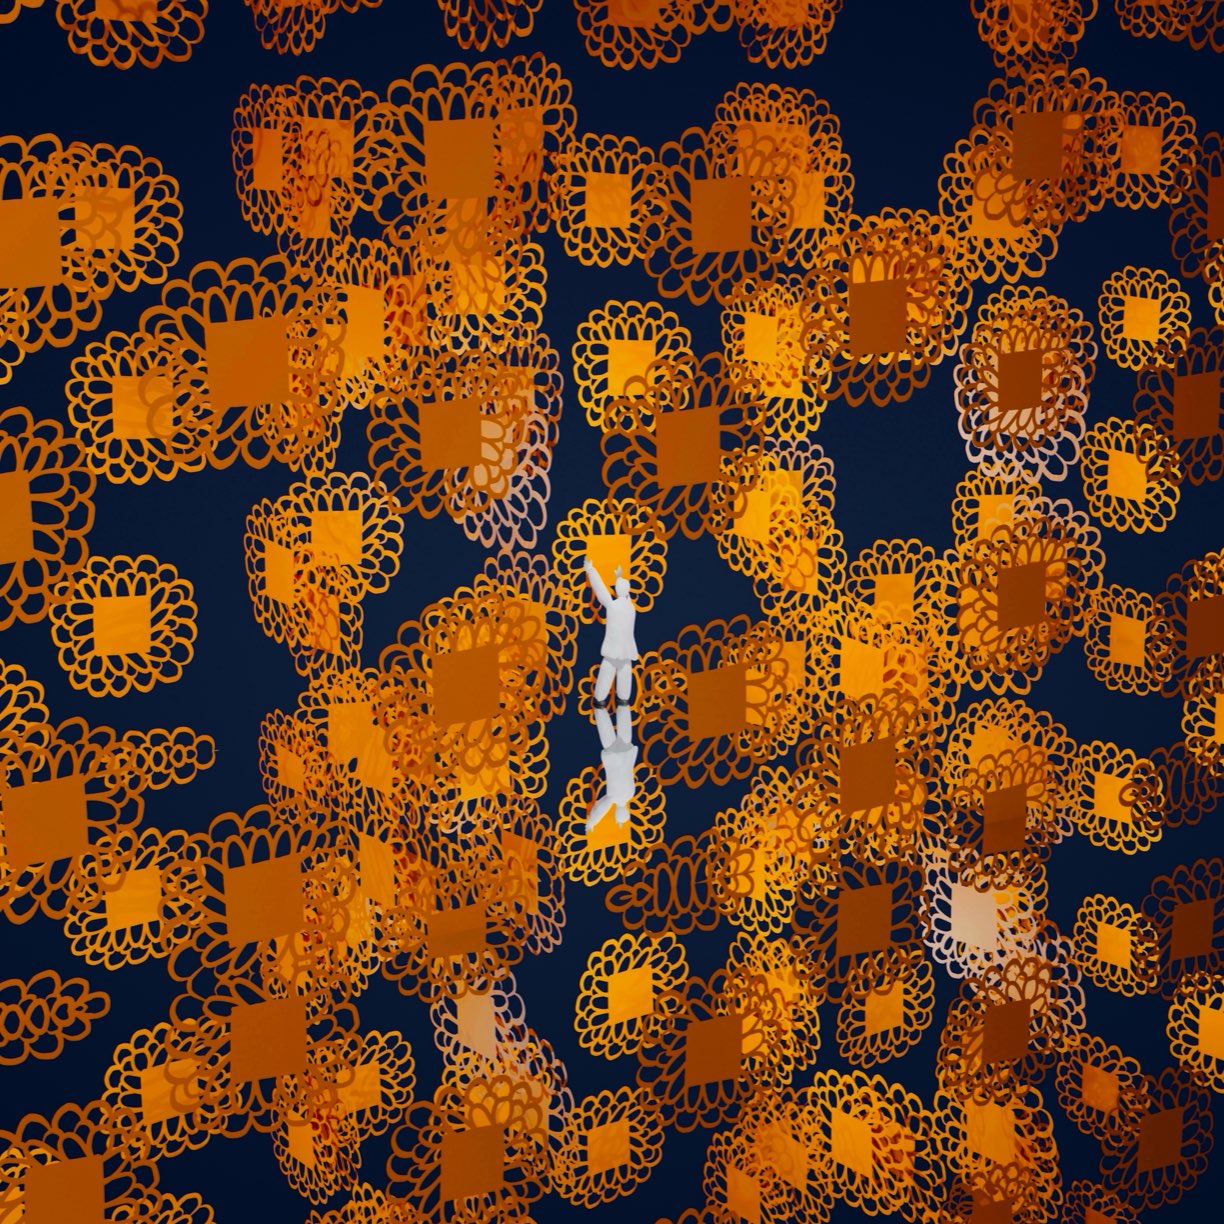 Atsushigraphのデジタルアート作品「Flower Pixel」の画像です。